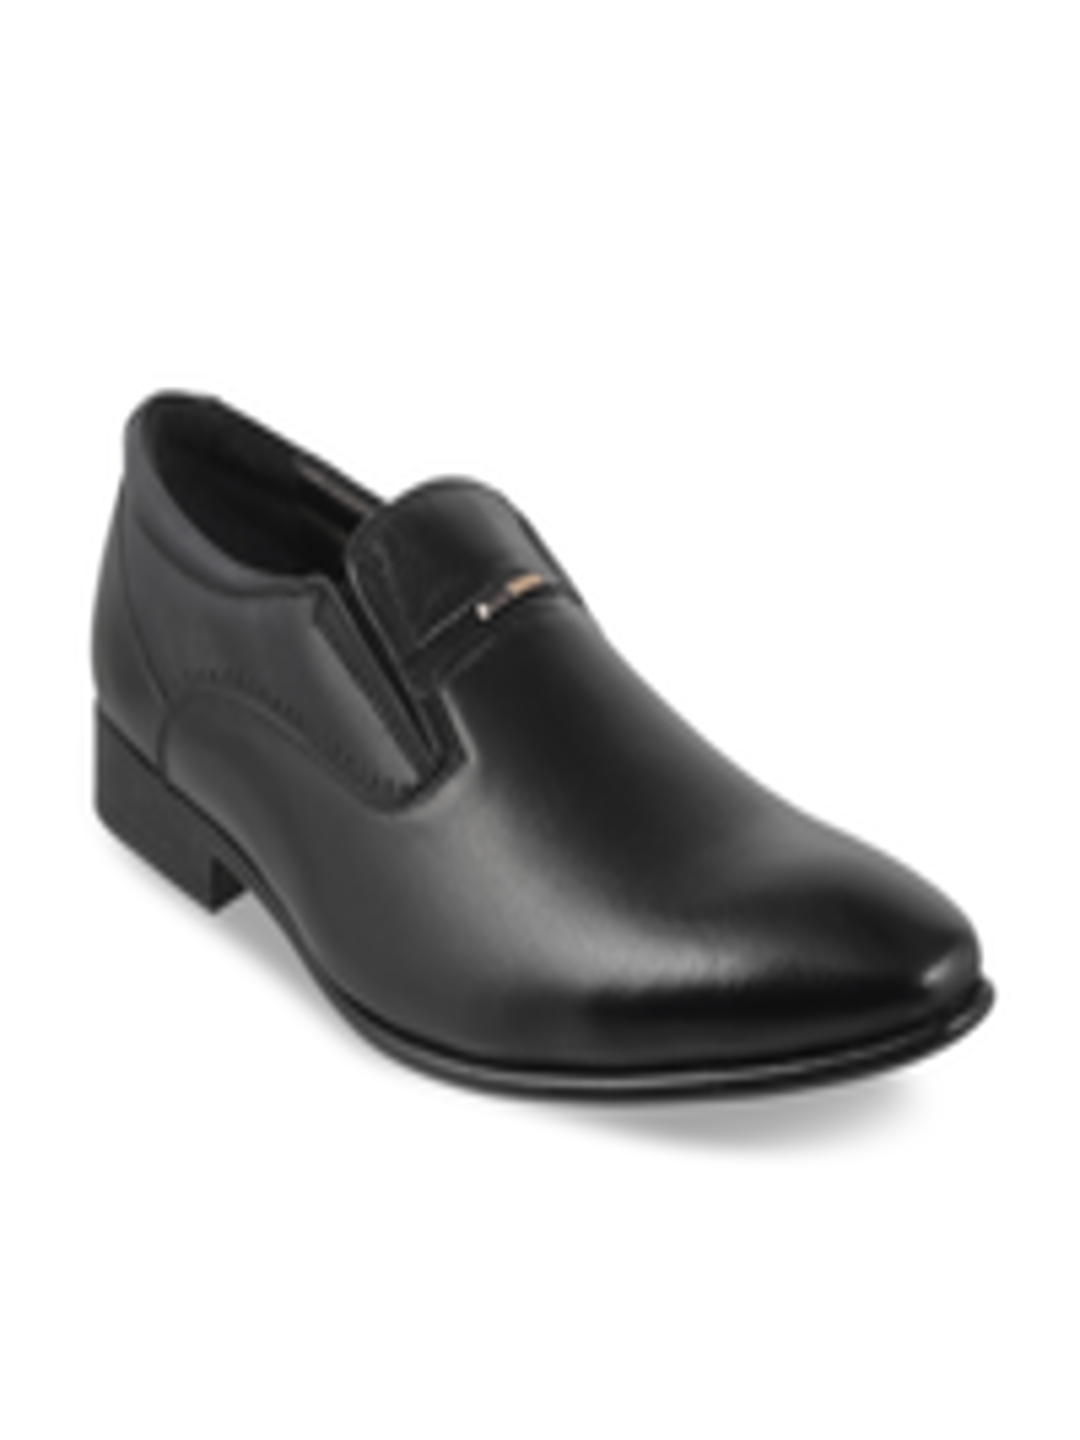 Buy Metro Men Black Leather Formal Shoes - Formal Shoes for Men 2060414 ...